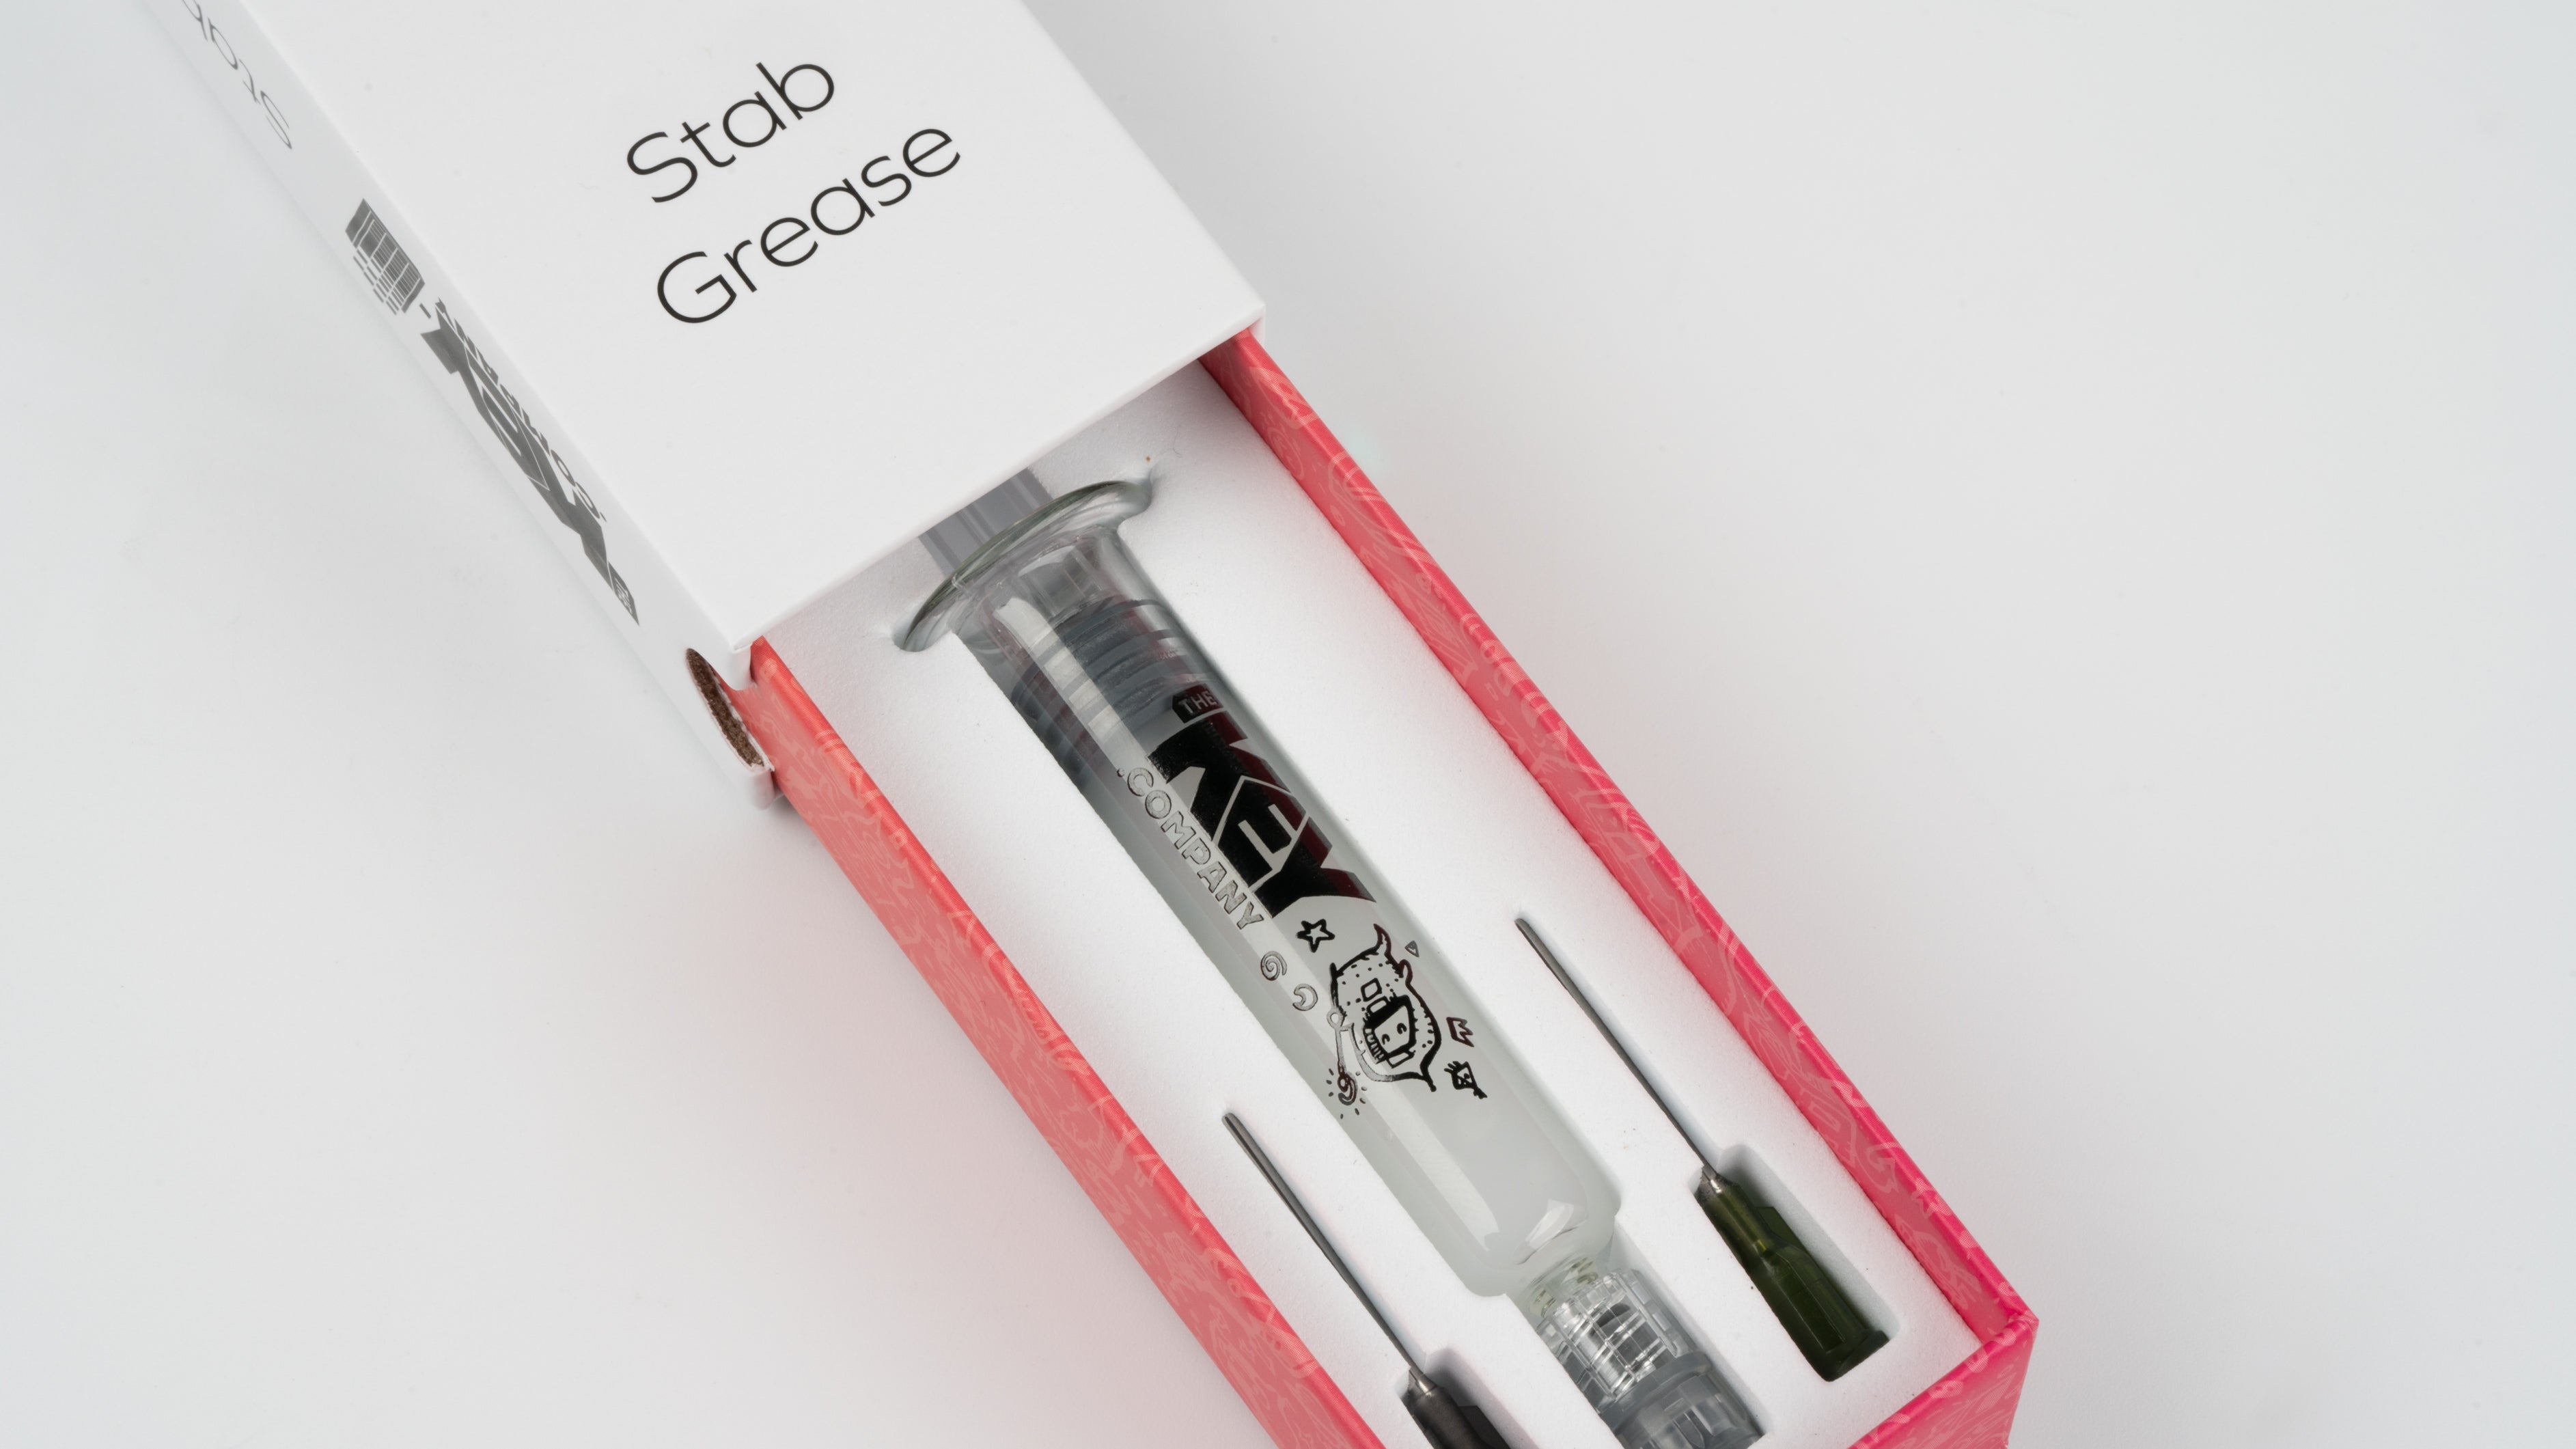 Stabilizer Grease Syringe Kit